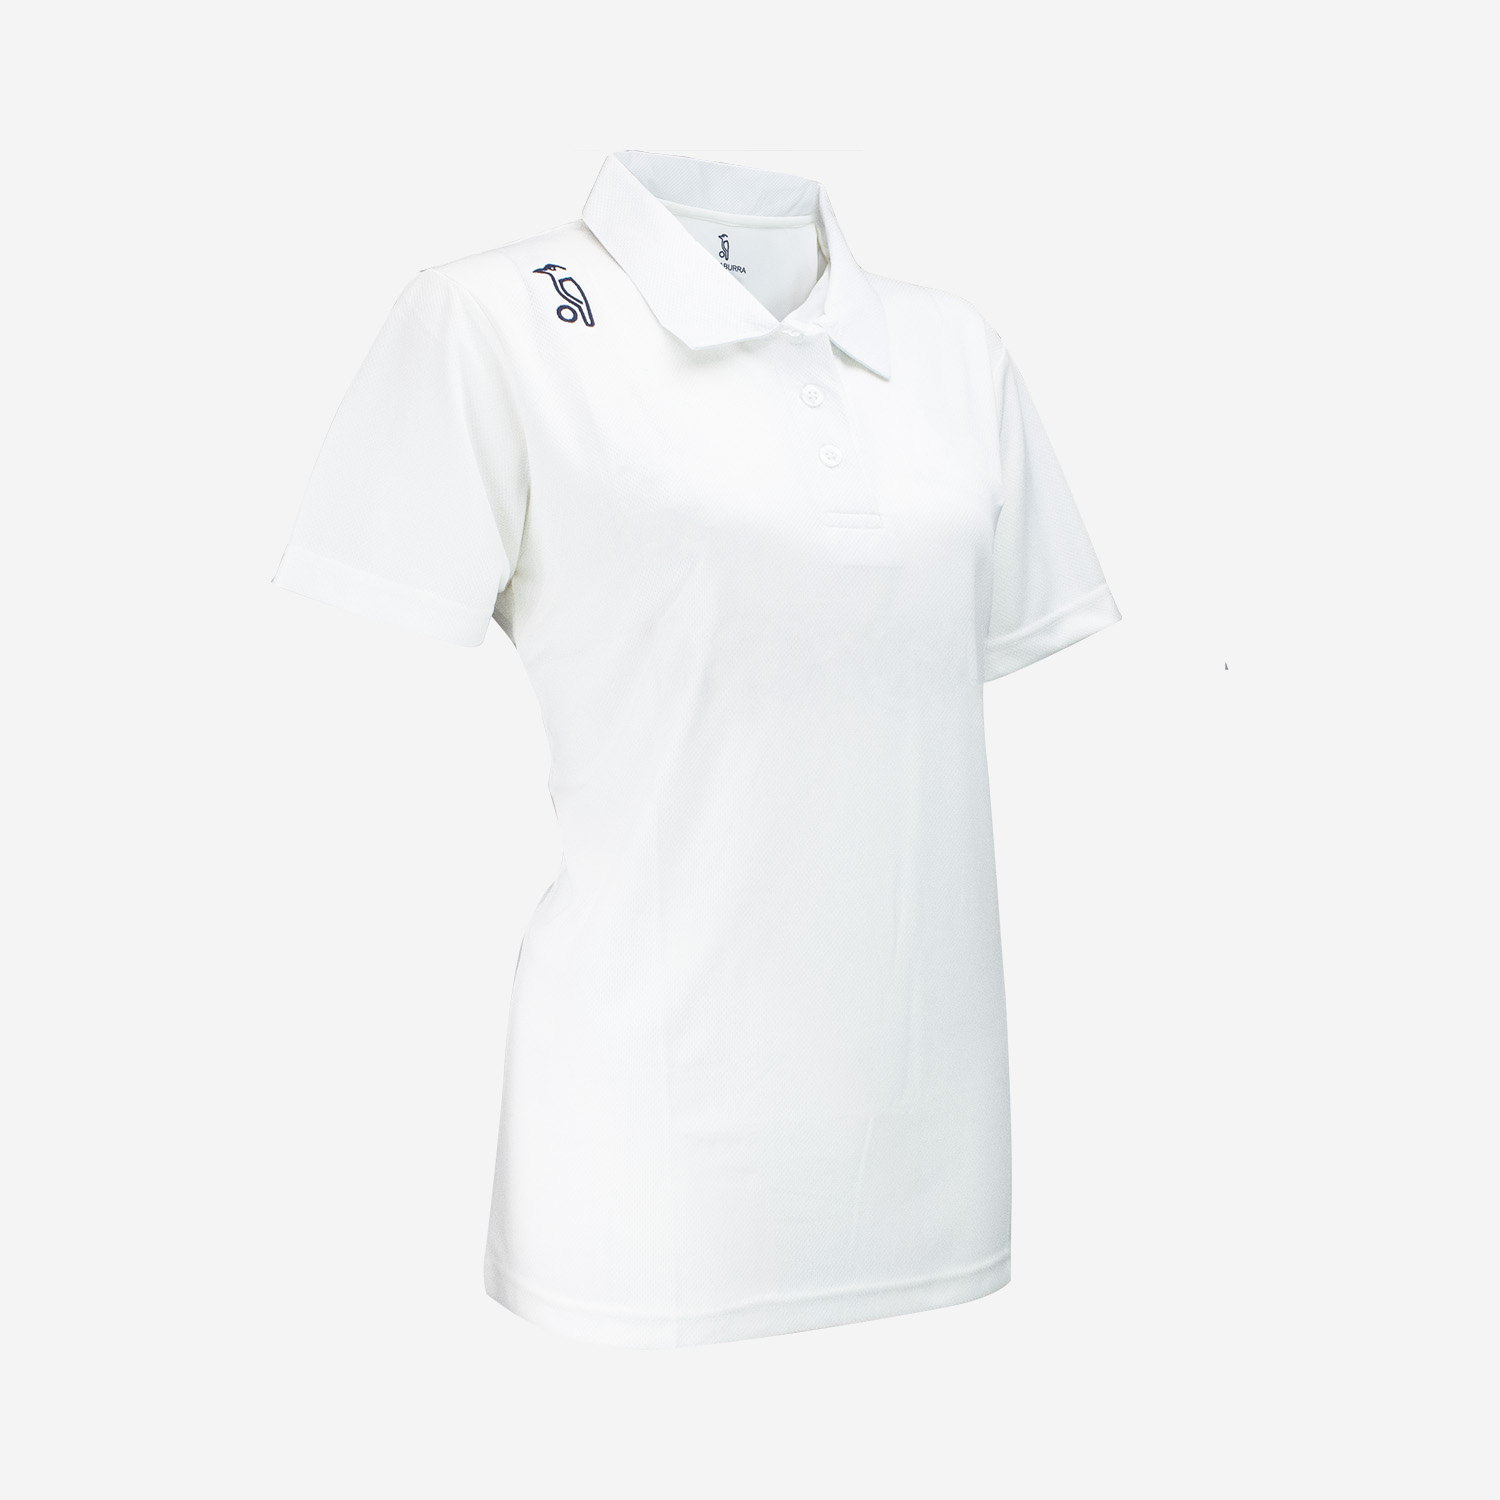 Womens Cricket Shirt